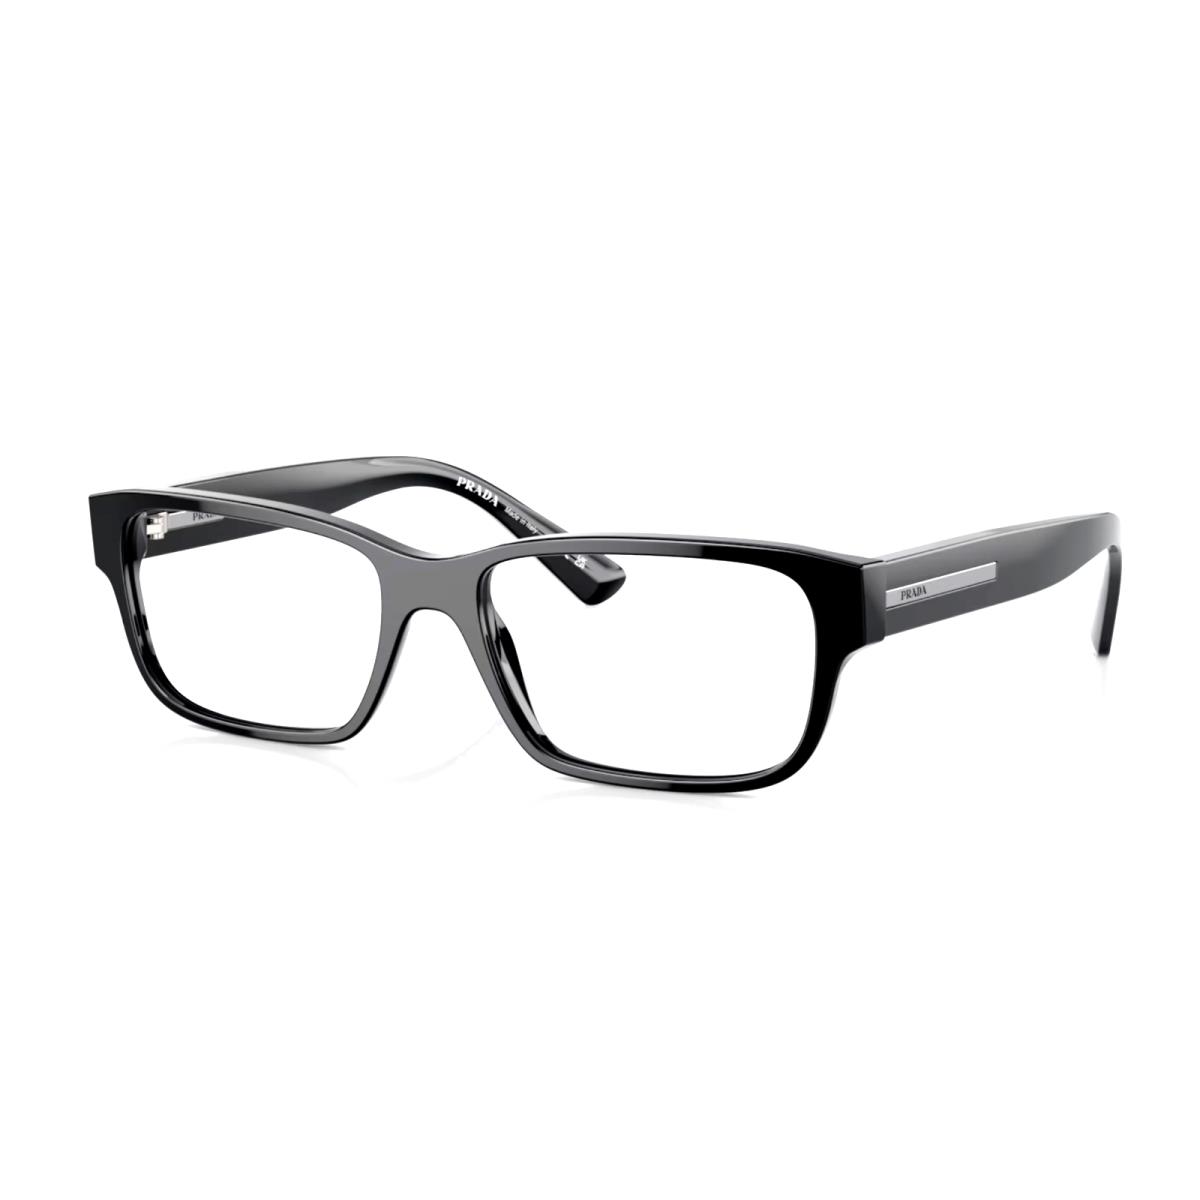 Prada Eyeglasses Vpr 18Z 1AB-1O1 56-17 140 Black Silver Large Wide Frames - Black Frame